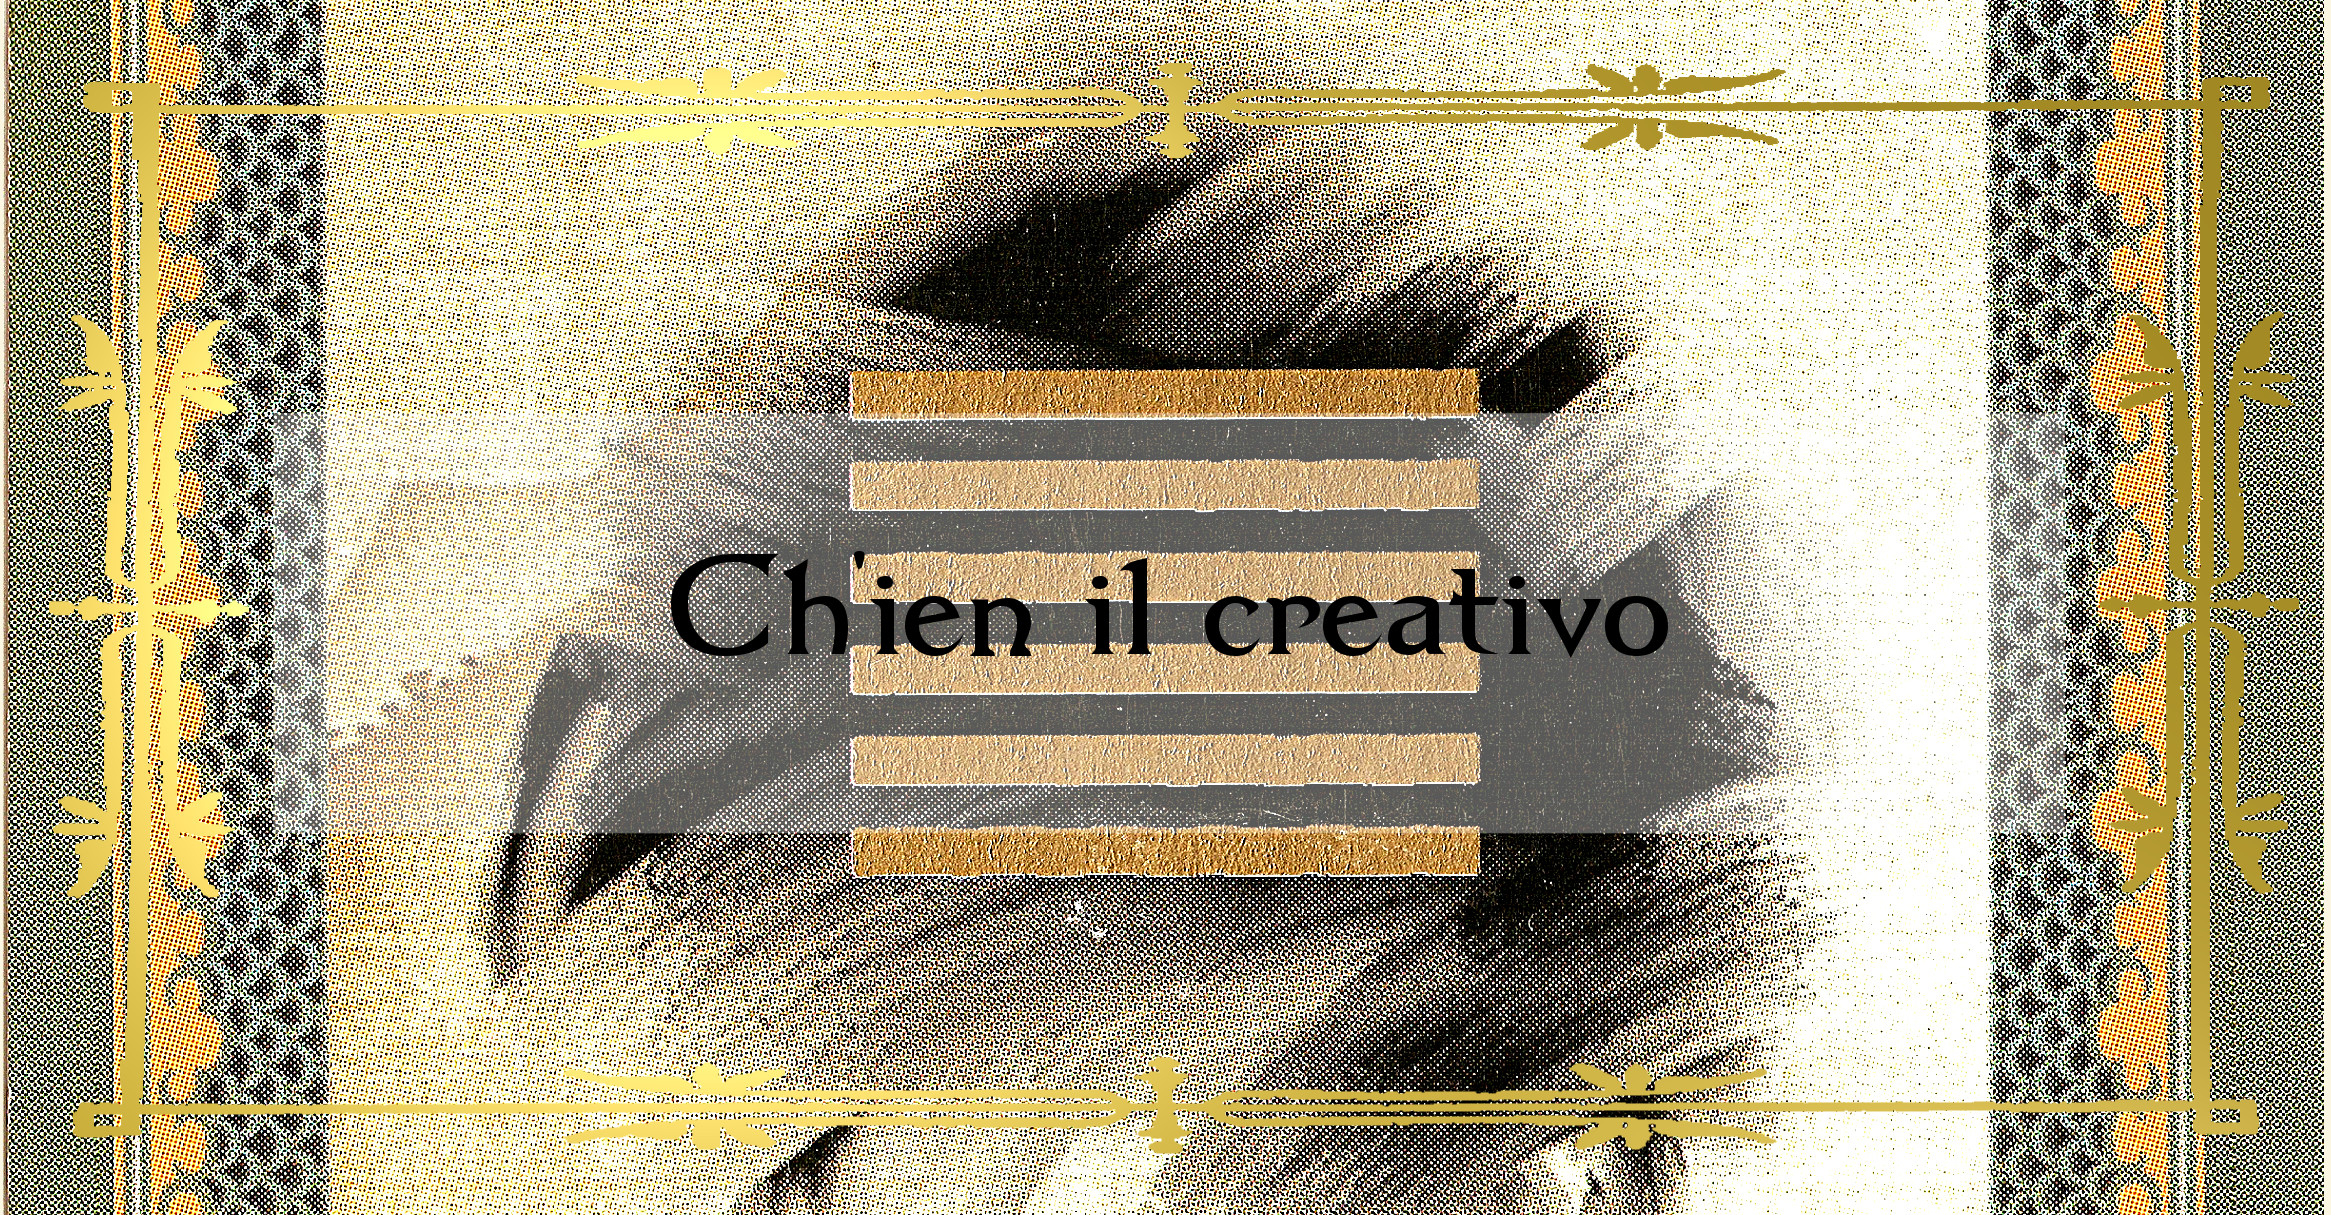 Ch’ien il creativo